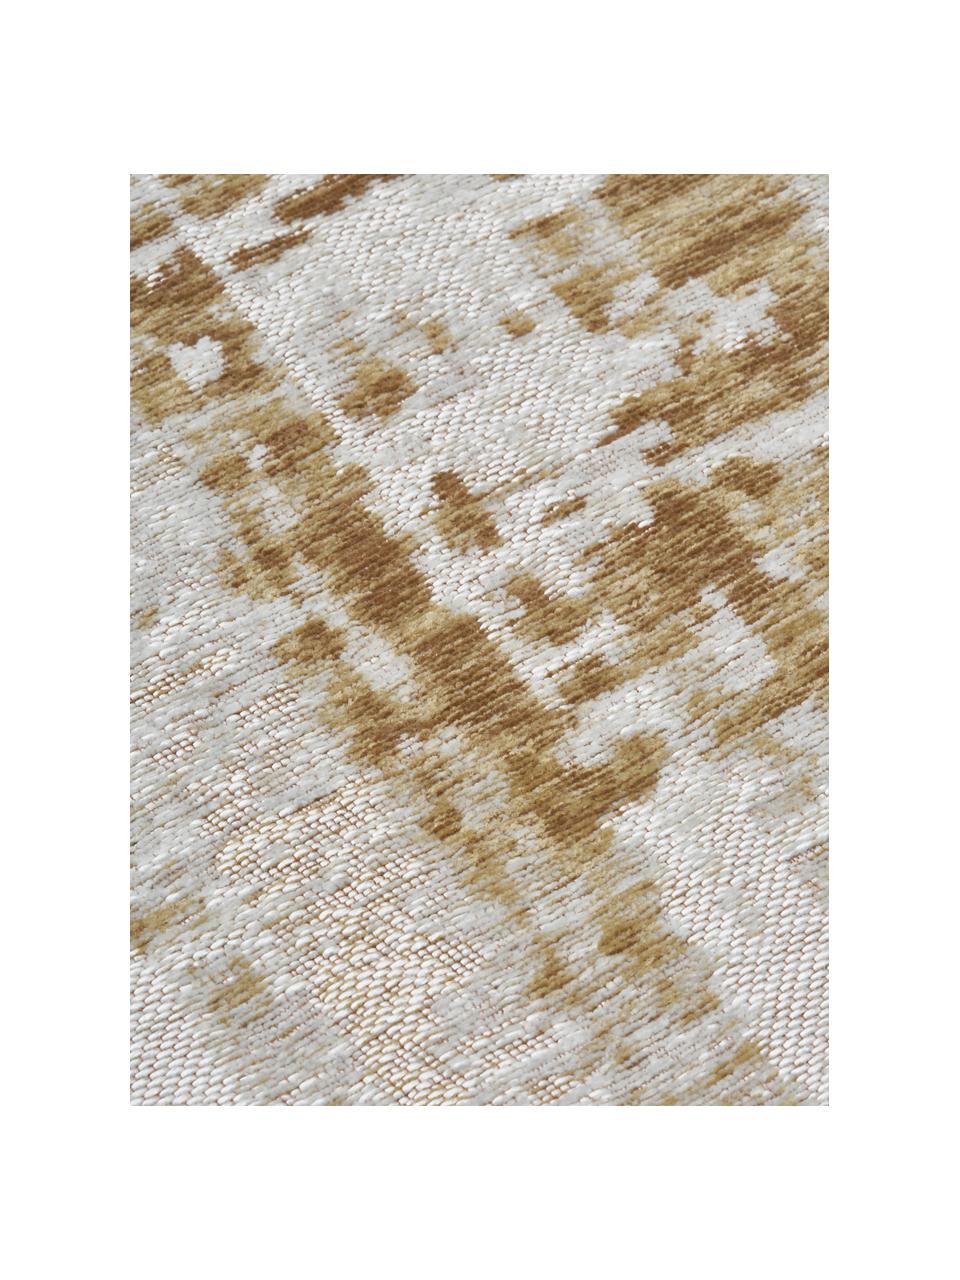 Naplocho tkaný bavlněný koberec Louisa, Zlatohnědá, stříbrná, Š 200 cm, D 300 cm (velikost L)